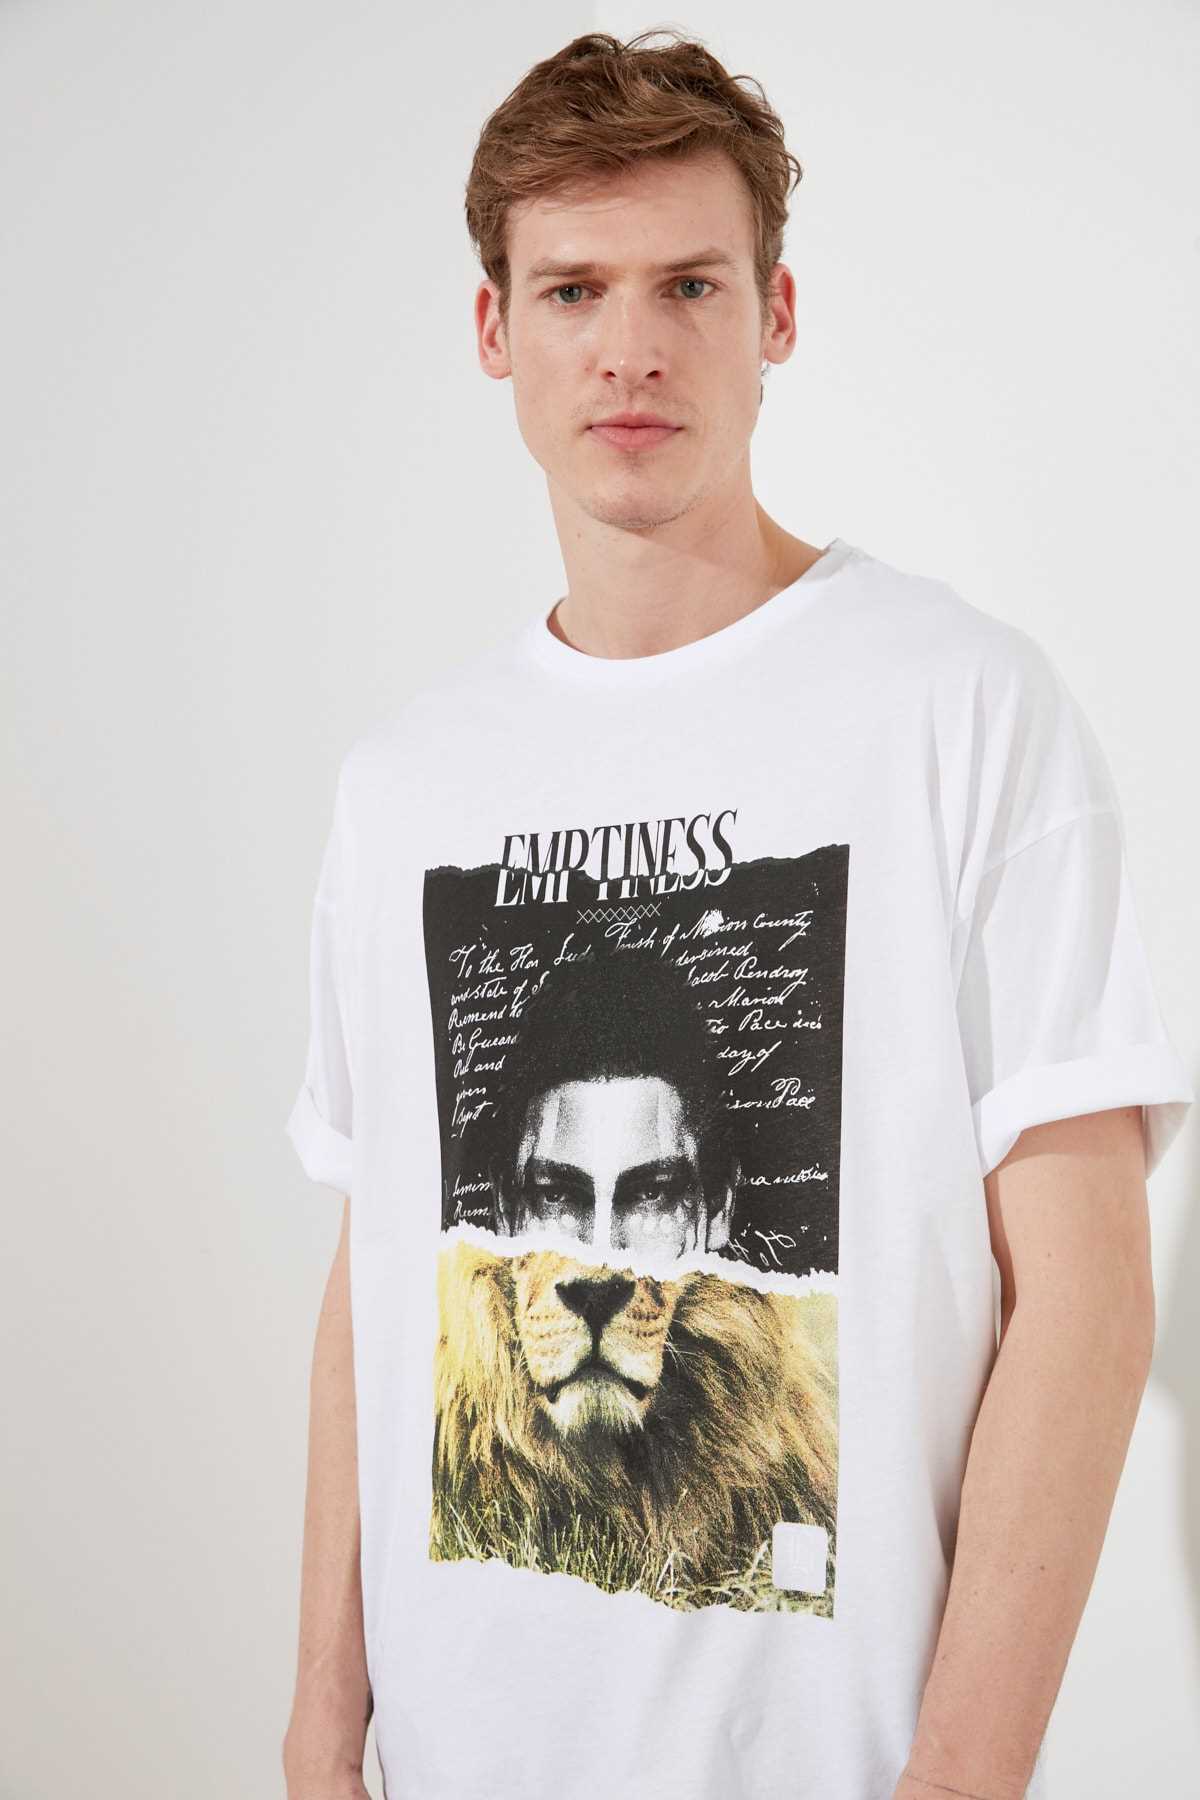 خرید انلاین تی شرت طرح دار برند ترندیول مرد کد ty82441254